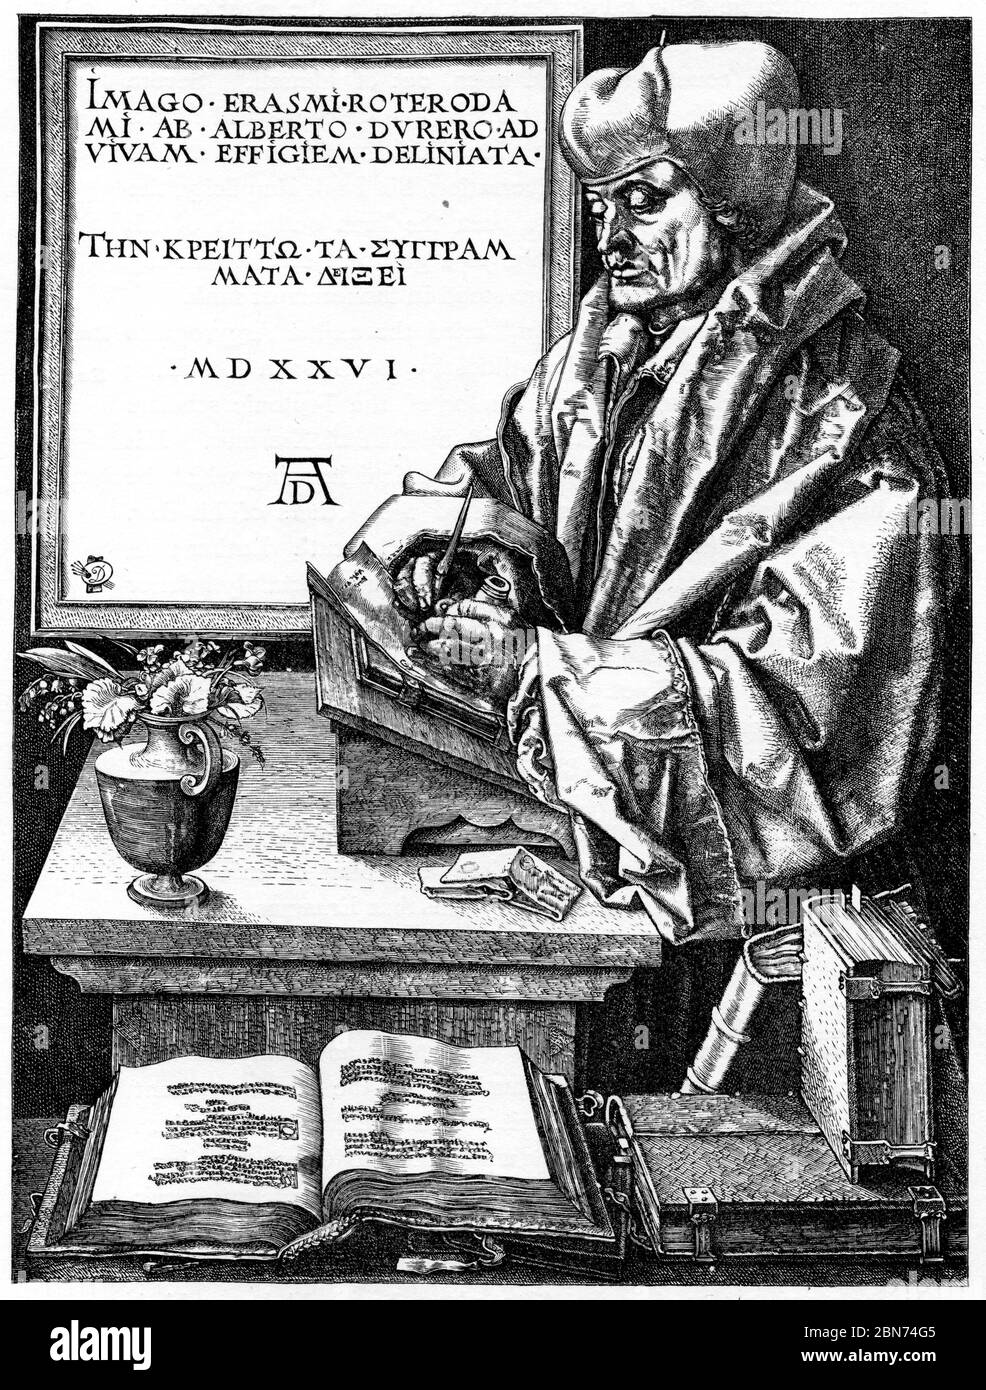 Portrait d'Erasmus, 1526. Par Albrecht Dürer (1471-1528). Desiderius Erasmus Roterodamus (1466-1536), connu sous le nom d'Erasmus ou Erasmus de Rotterdam, était un philosophe et érudit chrétien néerlandais considéré comme l'un des plus grands érudits de la Renaissance septentrionale. Banque D'Images